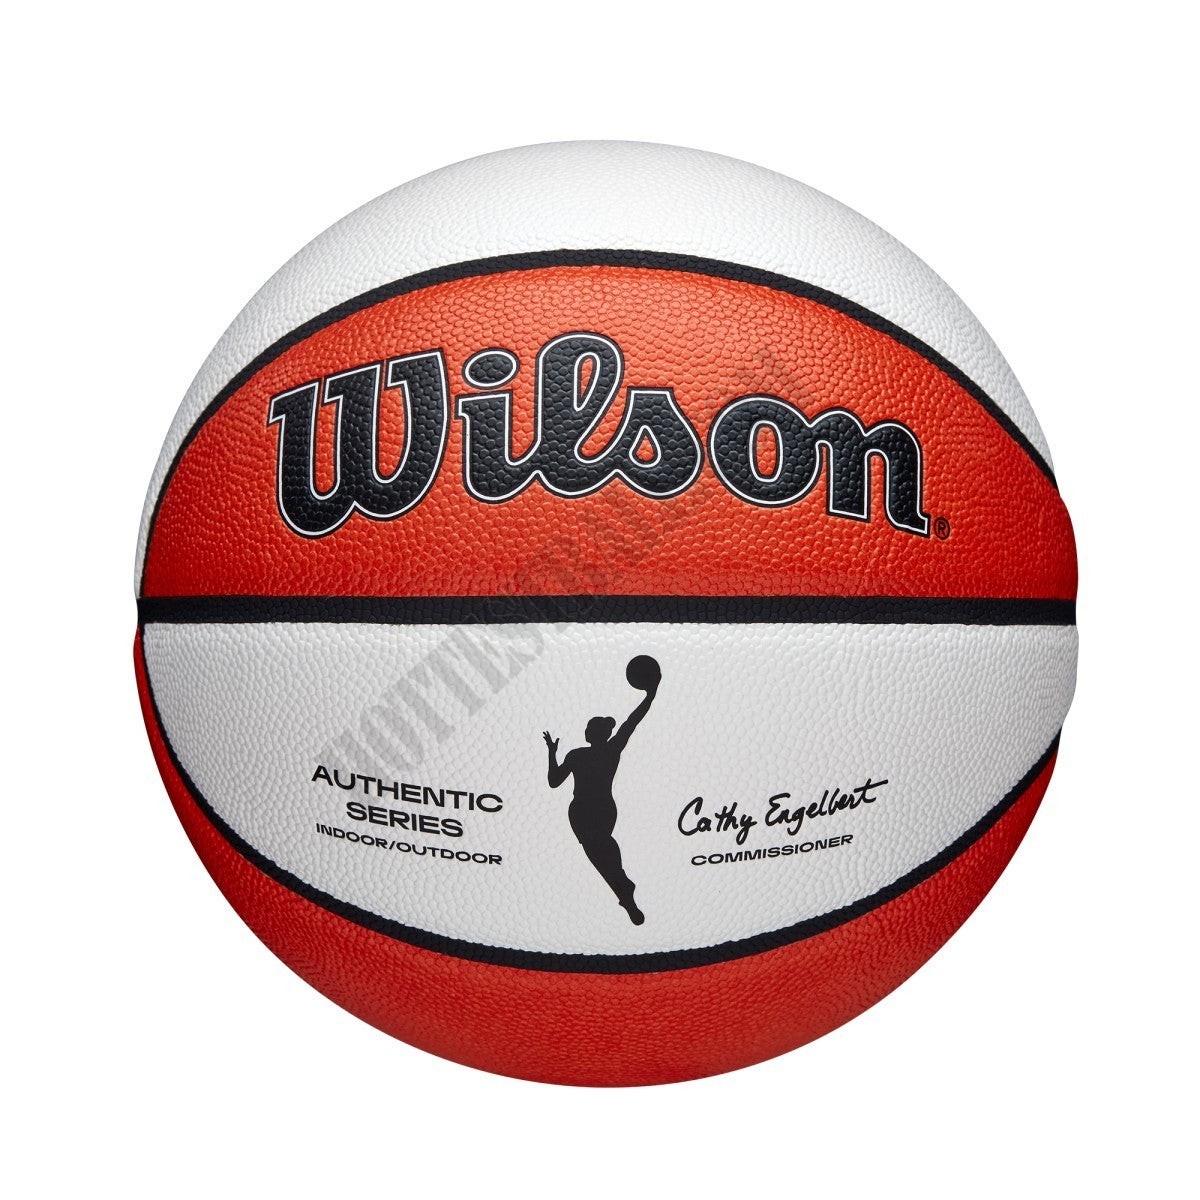 WNBA Authentic Indoor/Outdoor Basketball - Wilson Discount Store - -0